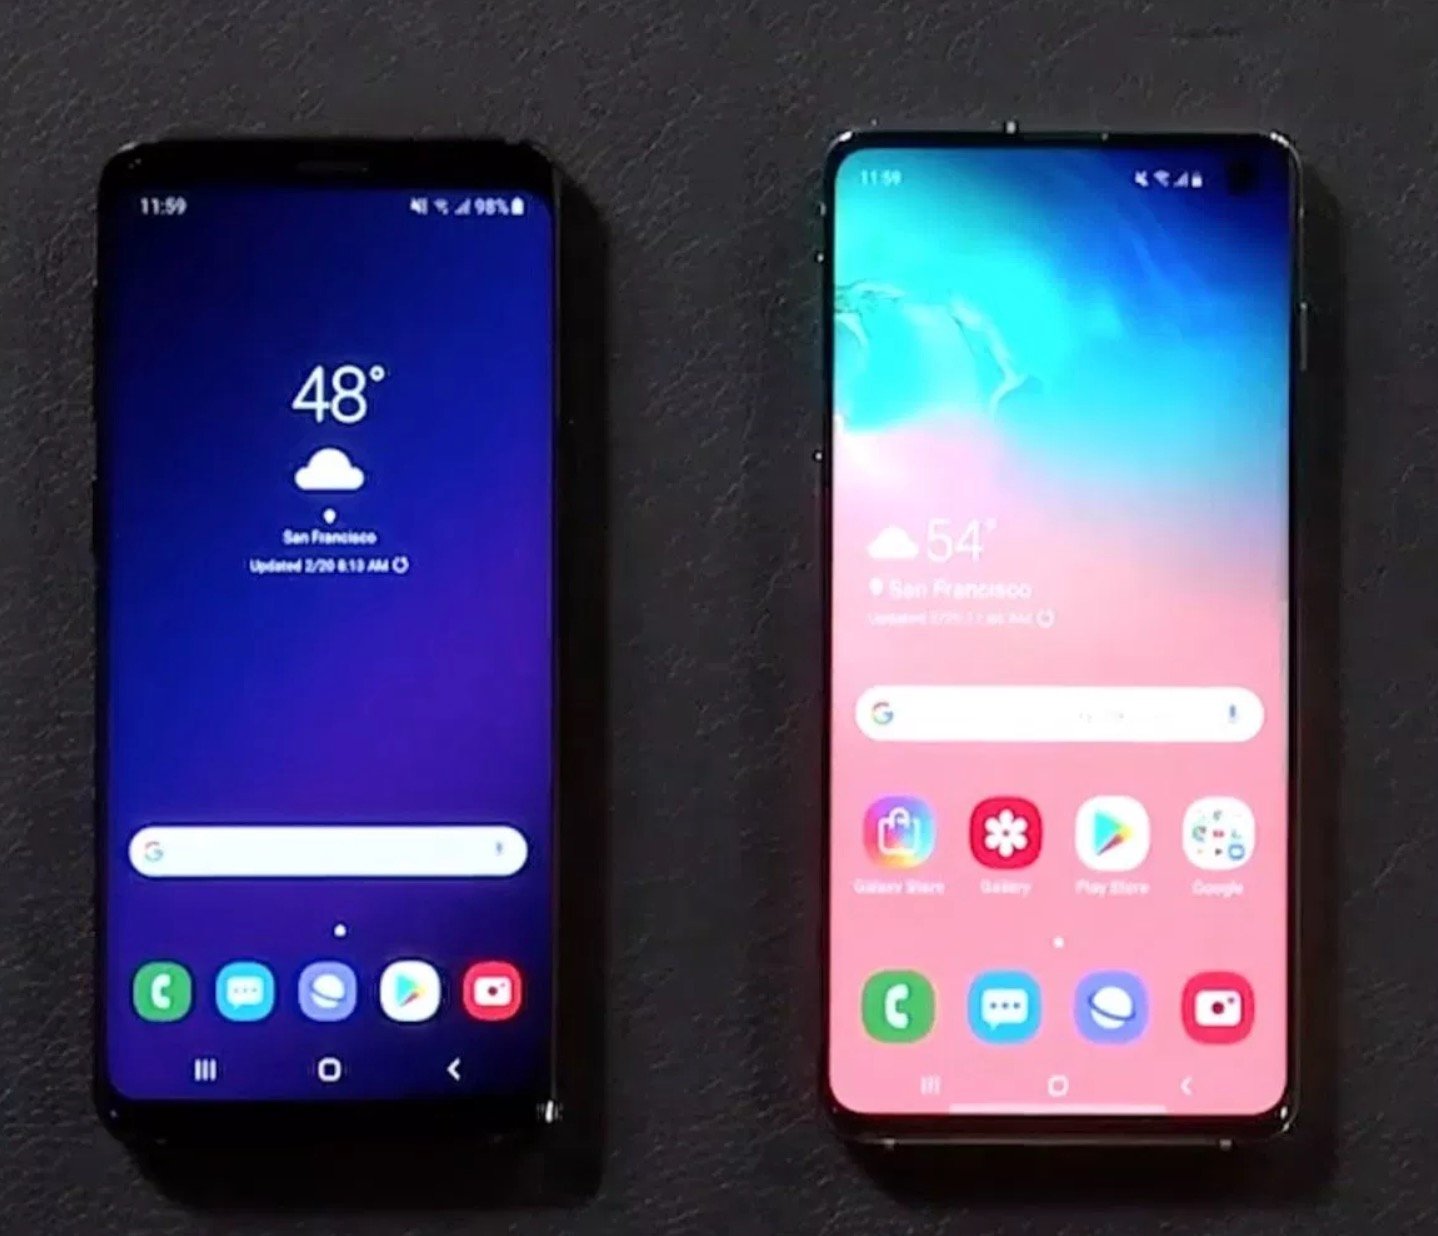 Galaxy s10 vs s10. S10 vs s10+. Galaxy s9 Plus vs s10. Samsung s9 vs s10. Samsung s10 vs s10+.